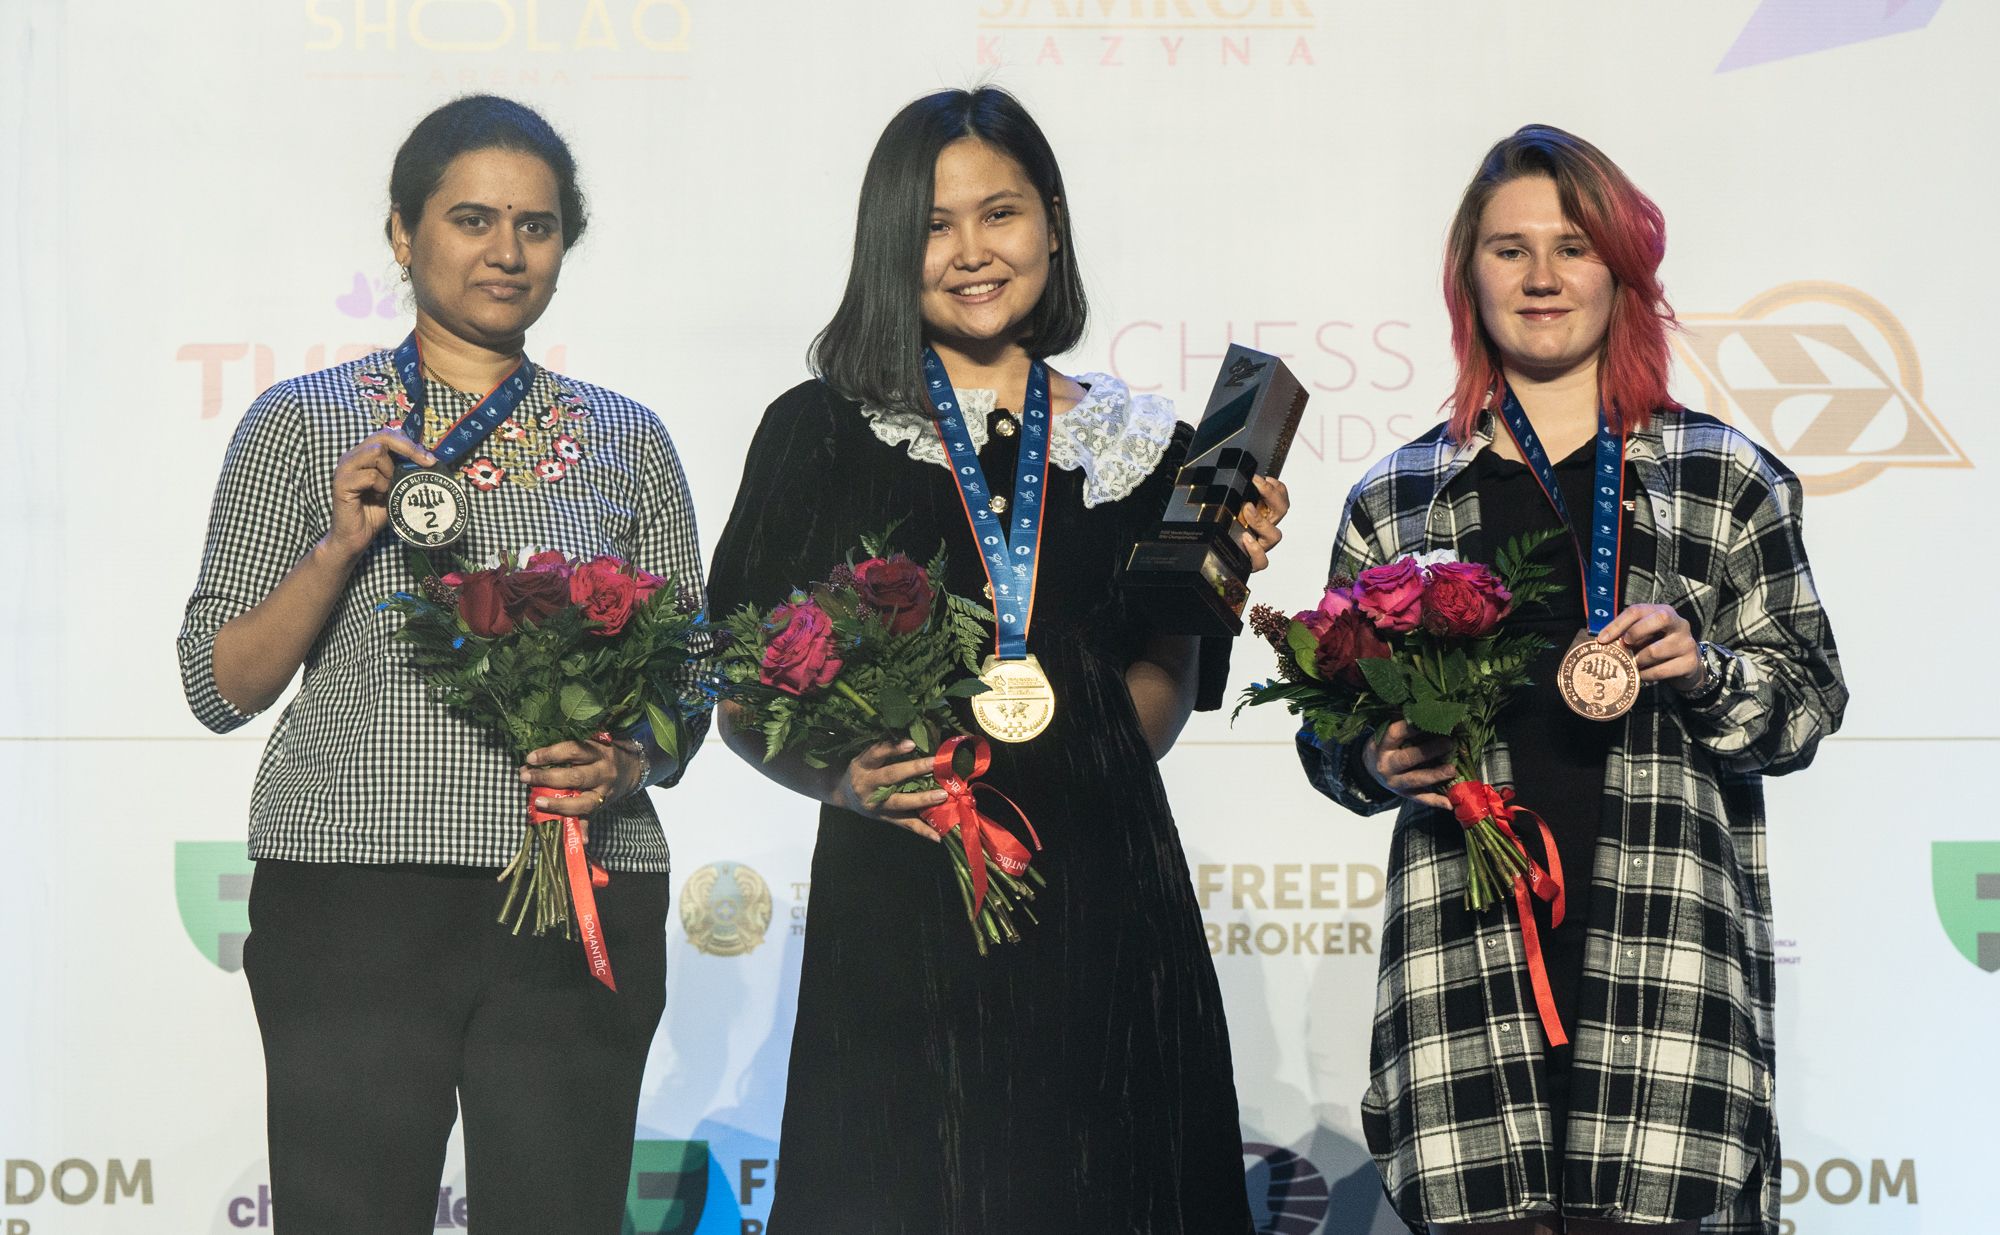 Carlsen Wins World Blitz Championship, Assaubayeva Defends Women's